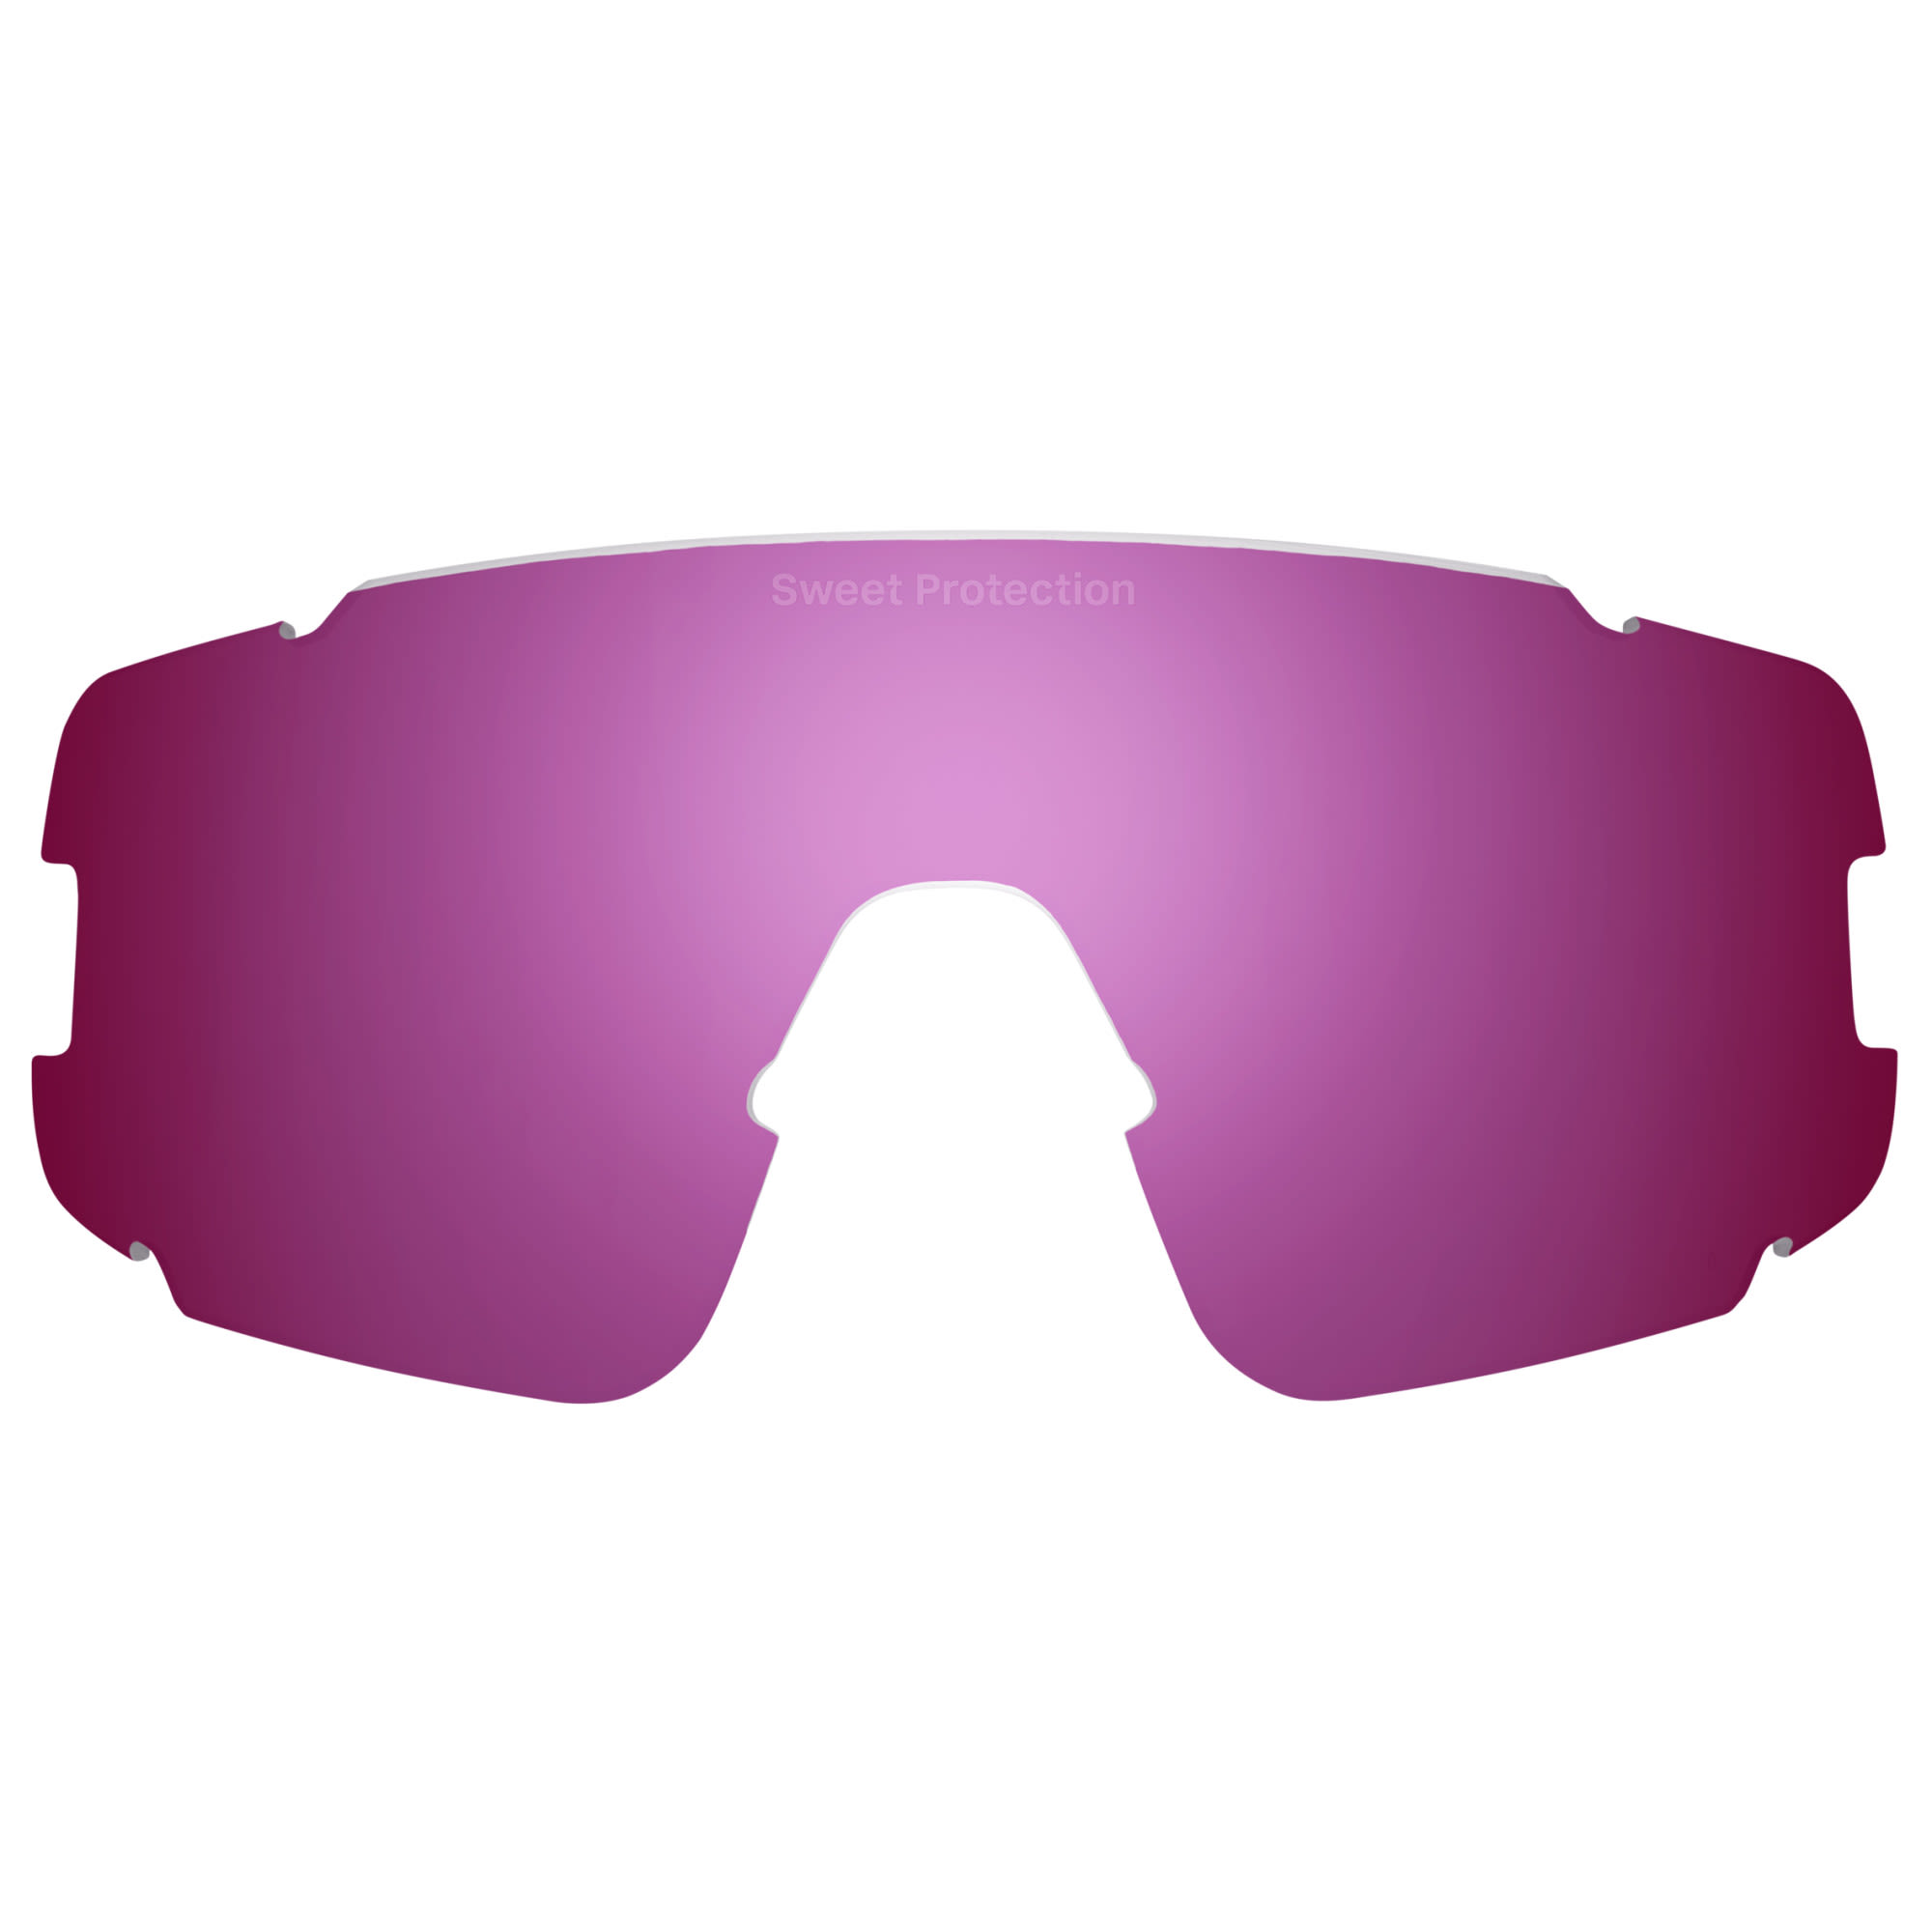 Sweet Protection Hochwertige Sportbrillen Ersatzscheibe RIG Bixbite